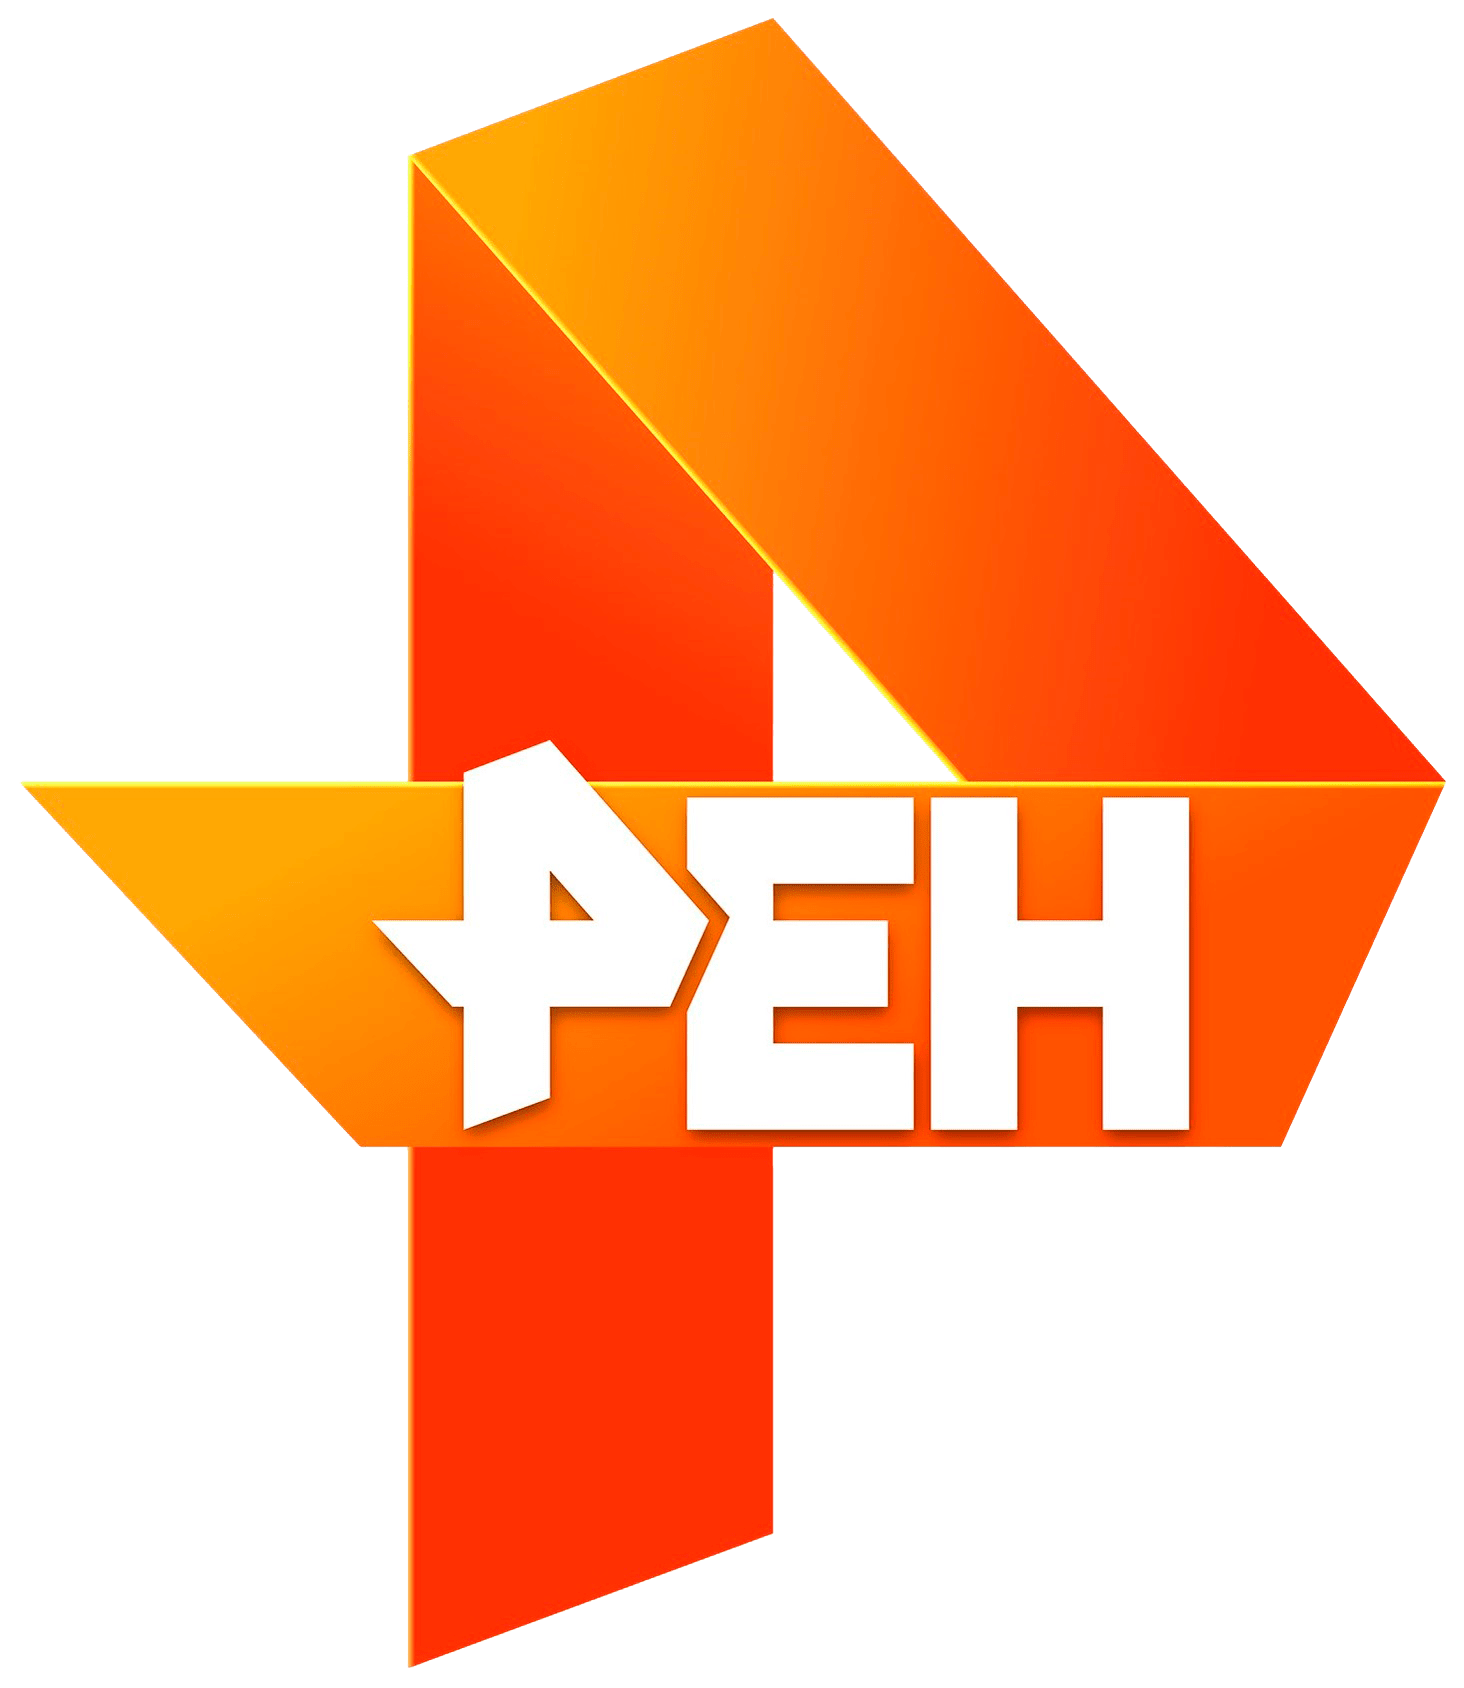 Раземщение рекламы РЕН ТВ, г.Саратов